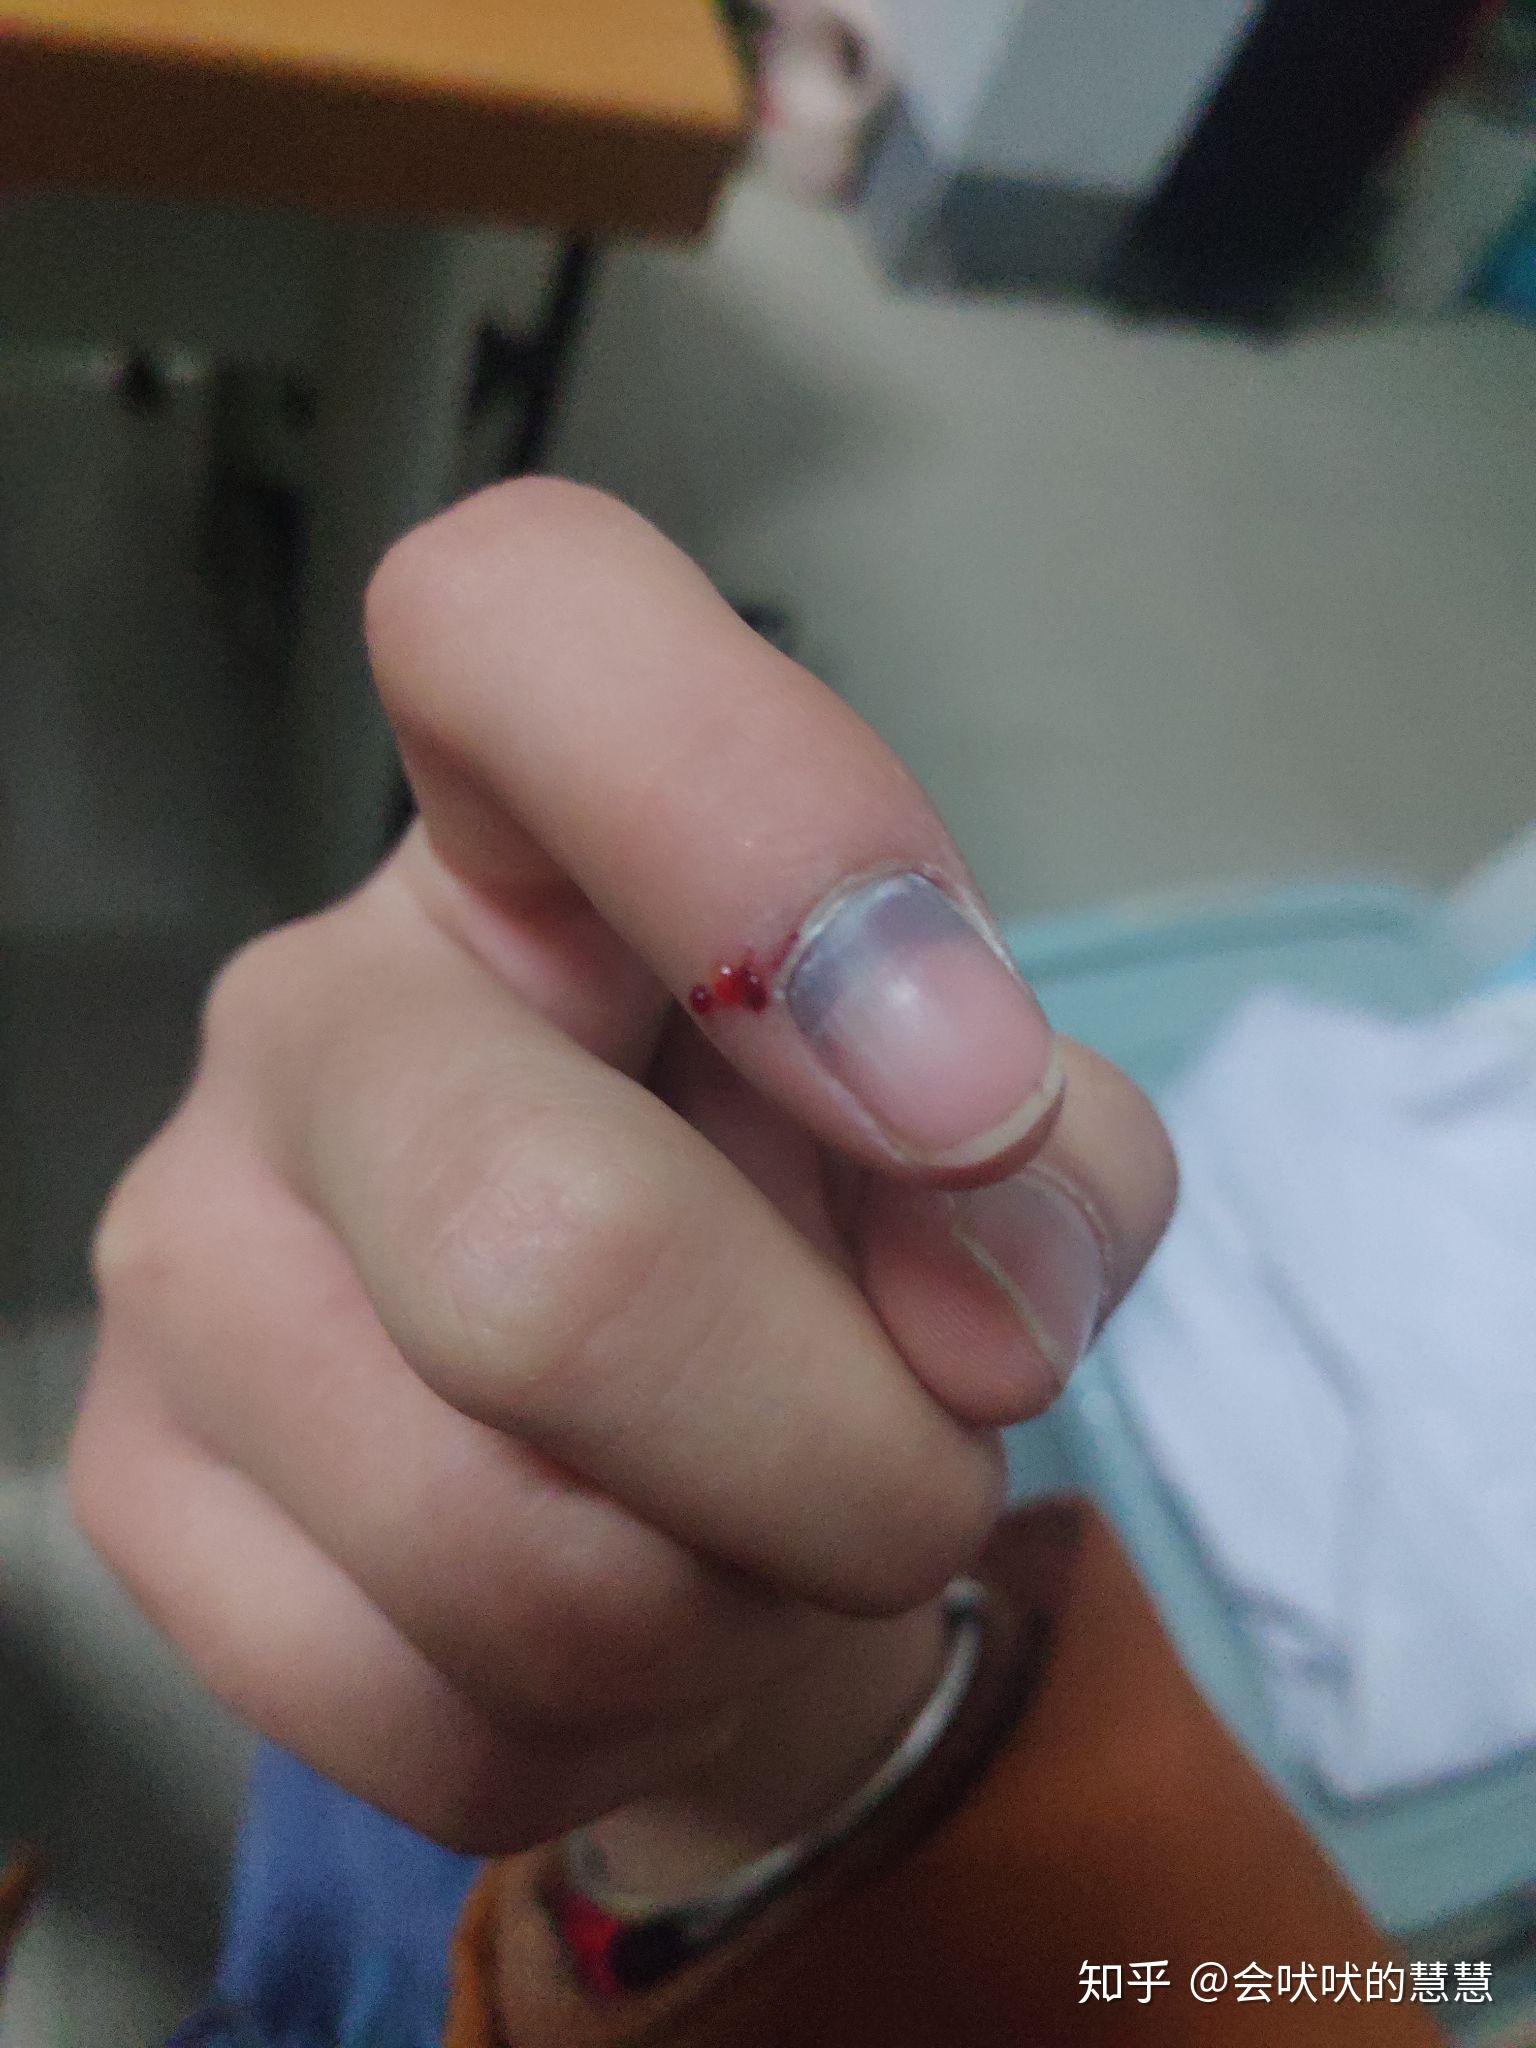 手指被夹出淤血-恢复过程记录 - 知乎